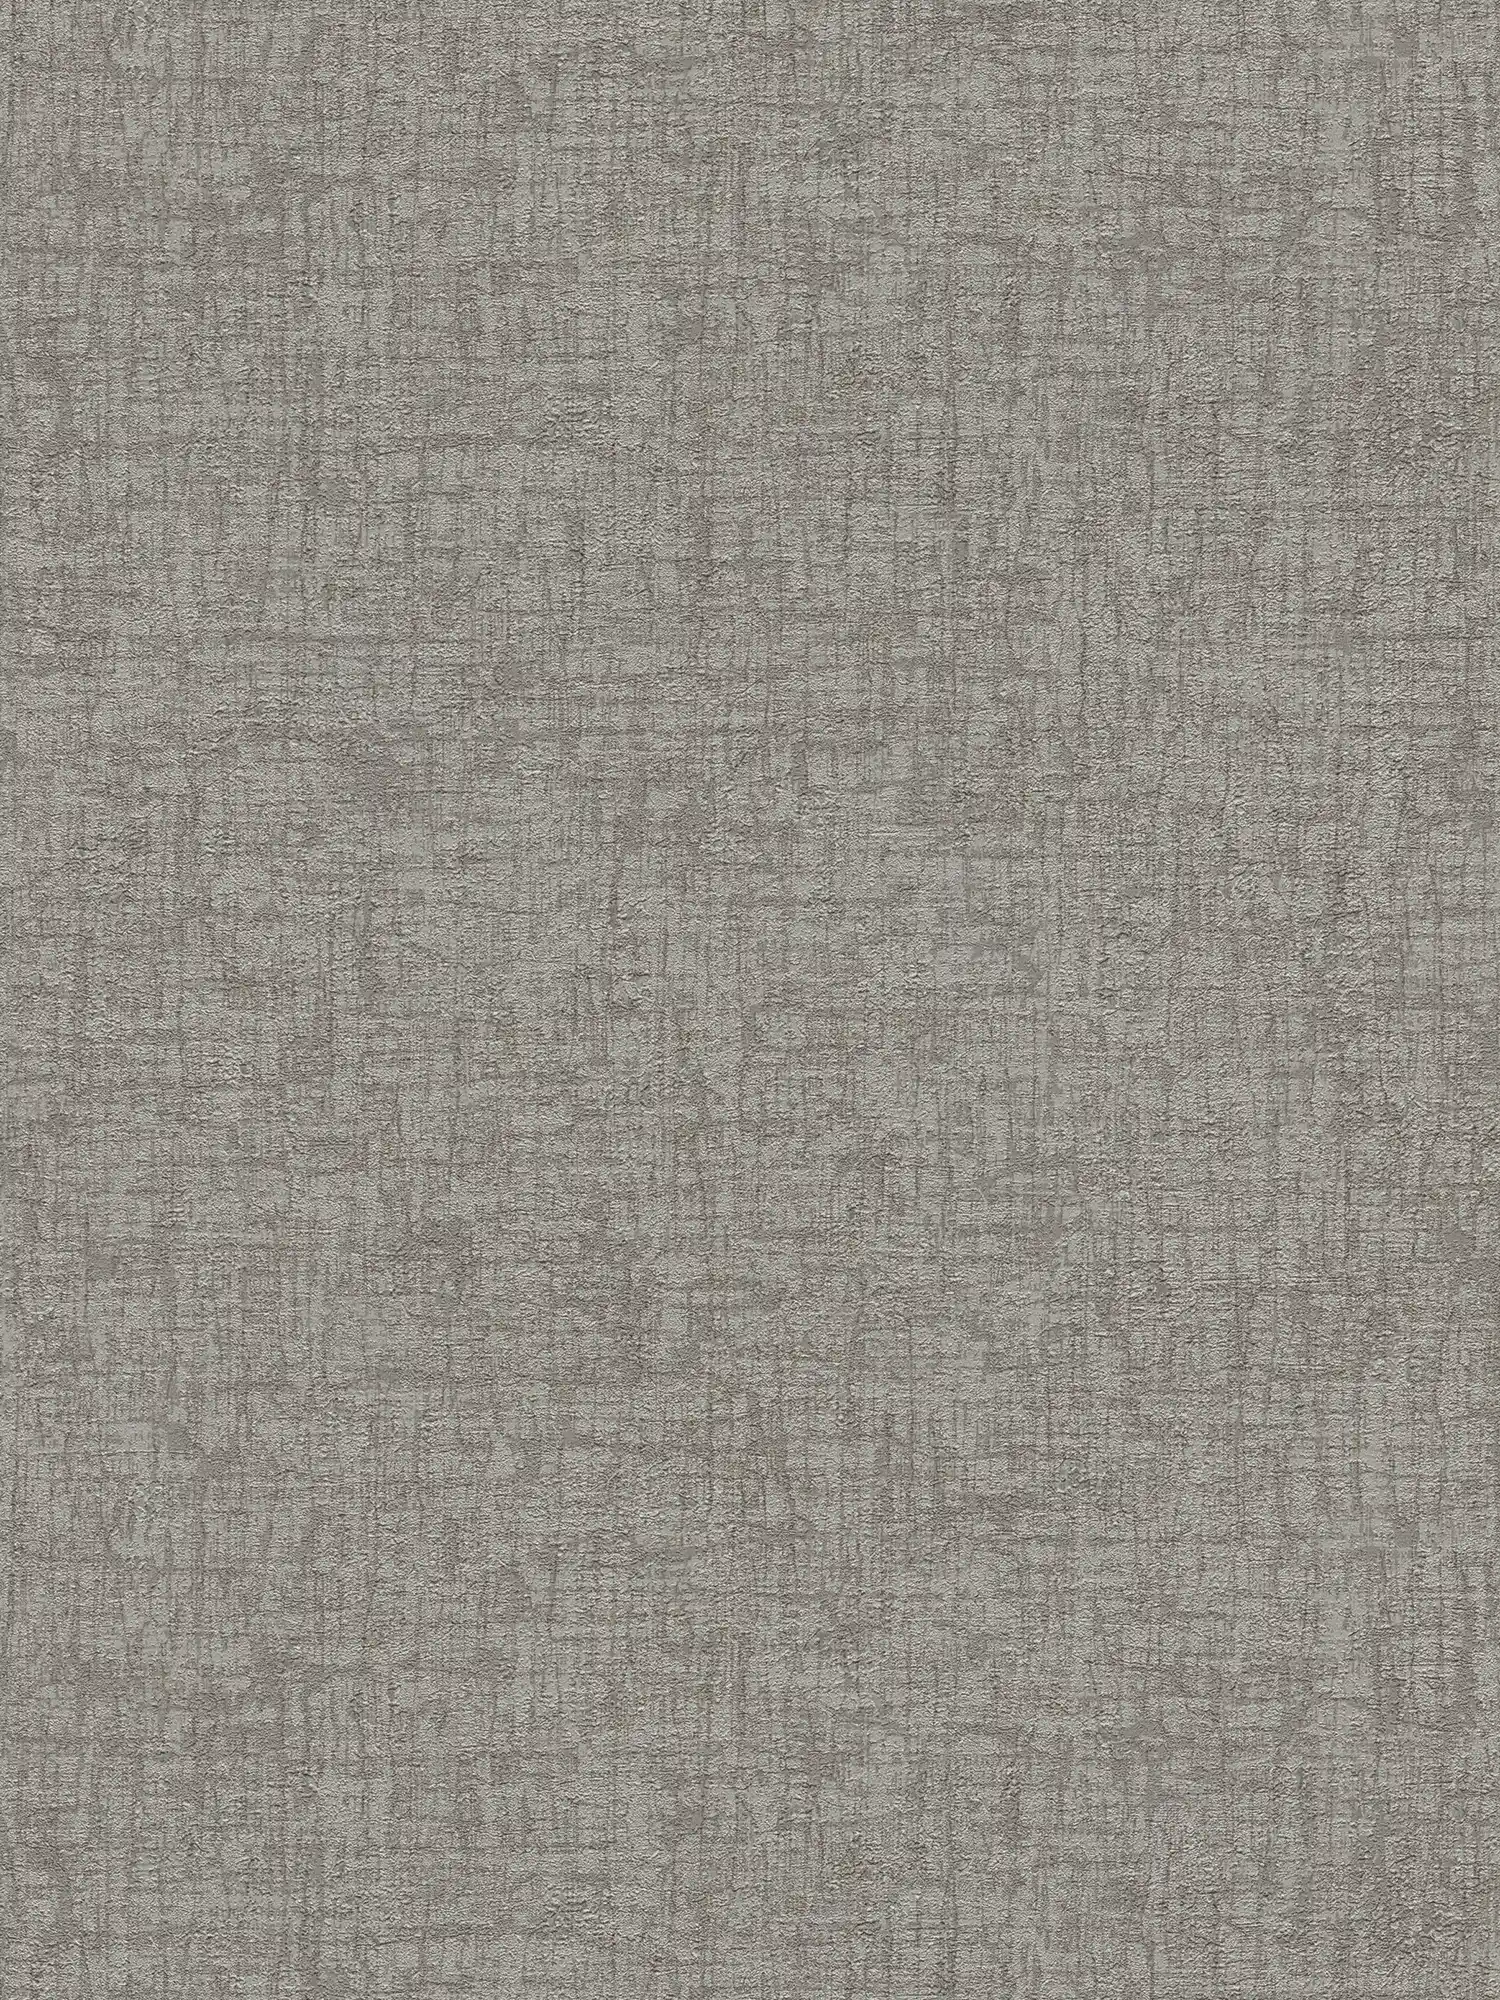         Papel pintado no tejido con textura de aspecto textil - gris, gris oscuro
    